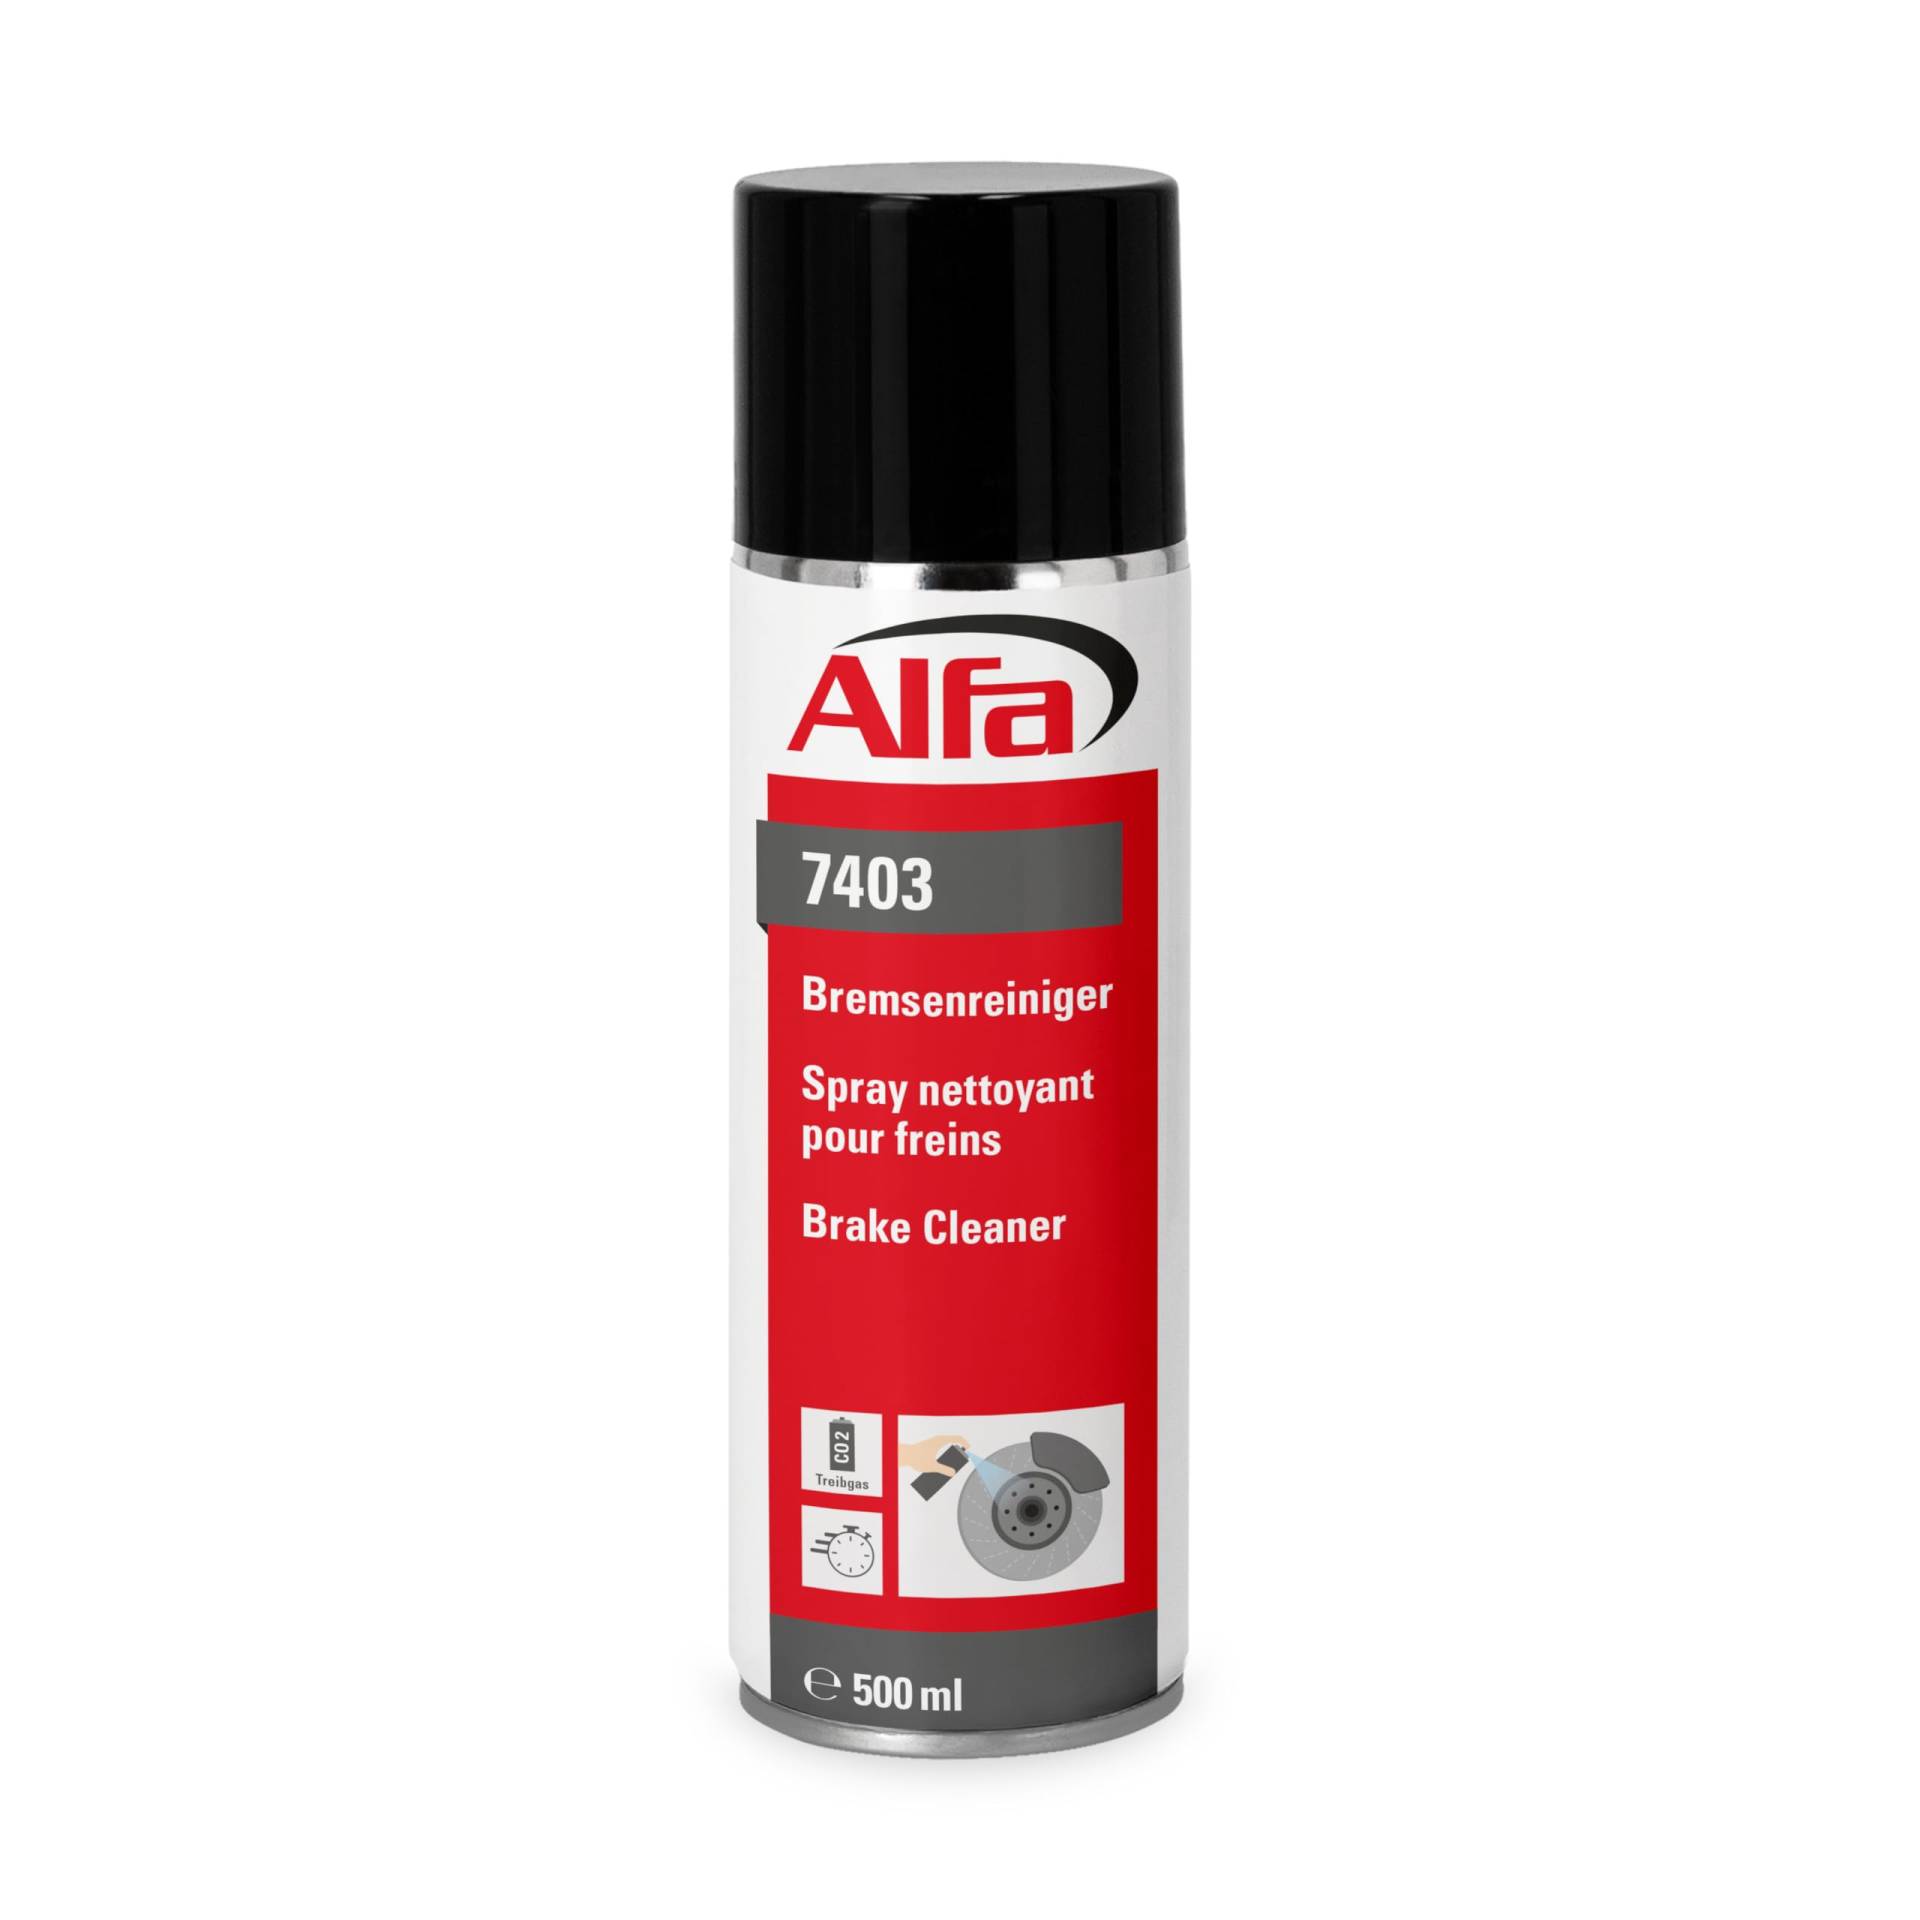 Alfa Bremsenreiniger 500 ml Profi-Qualität Premium-Reiniger Bremsen Spray kraftvoll rückstandsfrei gegen Öle Fette Harze - Made in Germany (6) von Alfa